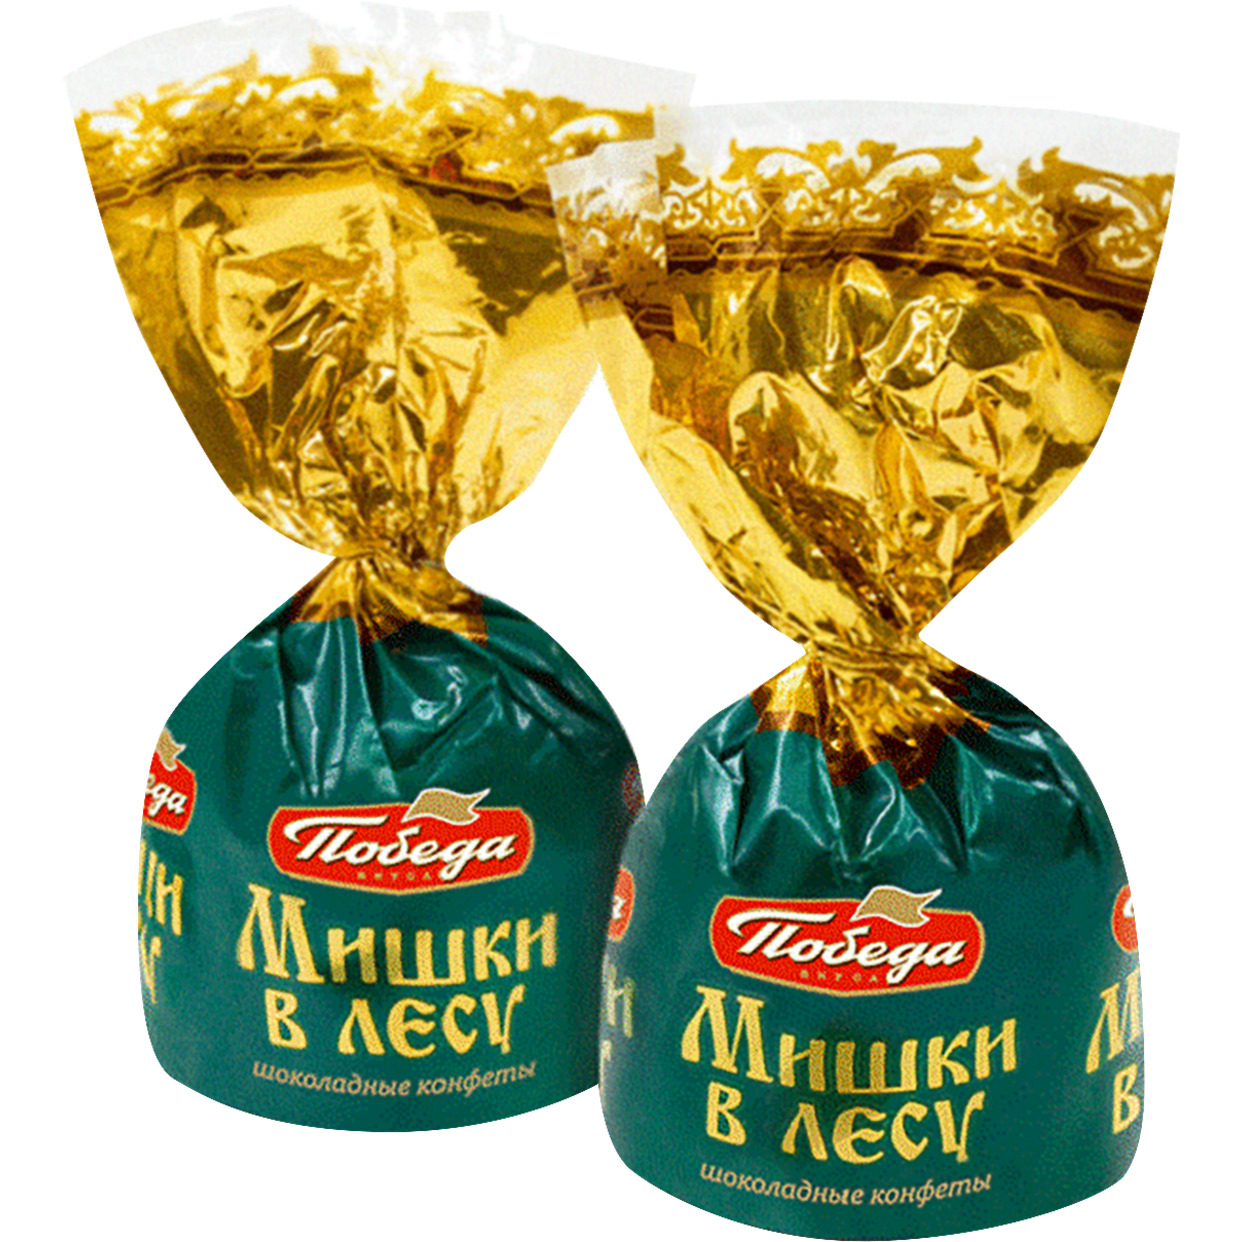 Шоколадные конфеты с начинкой и вафельной крошкой Мишки в лесу 1 кг по акции в Пятерочке